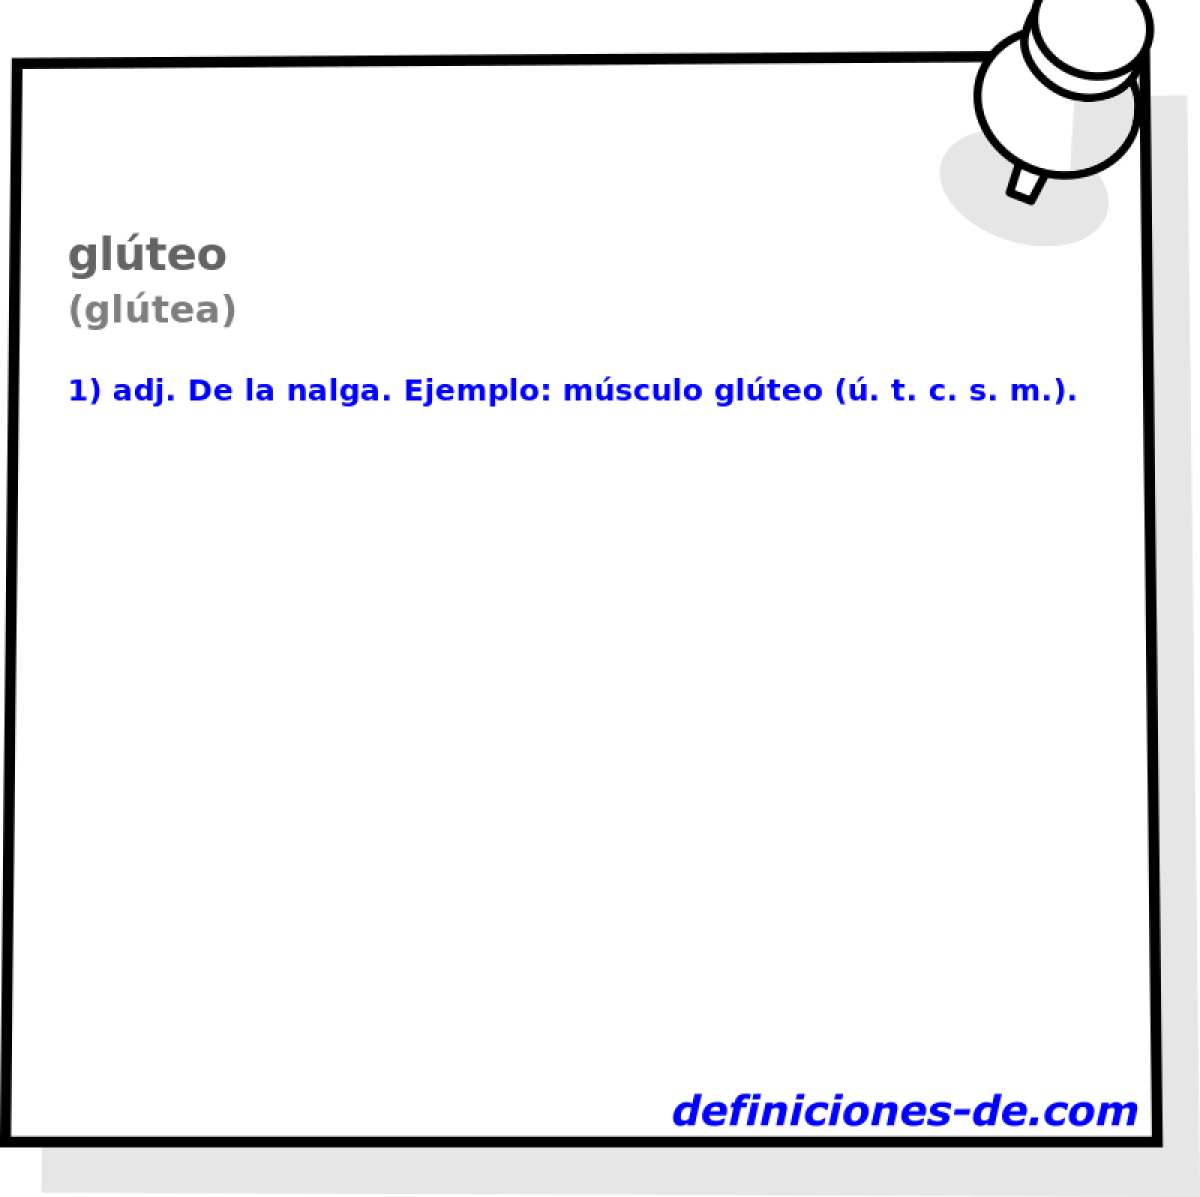 glteo (gltea)